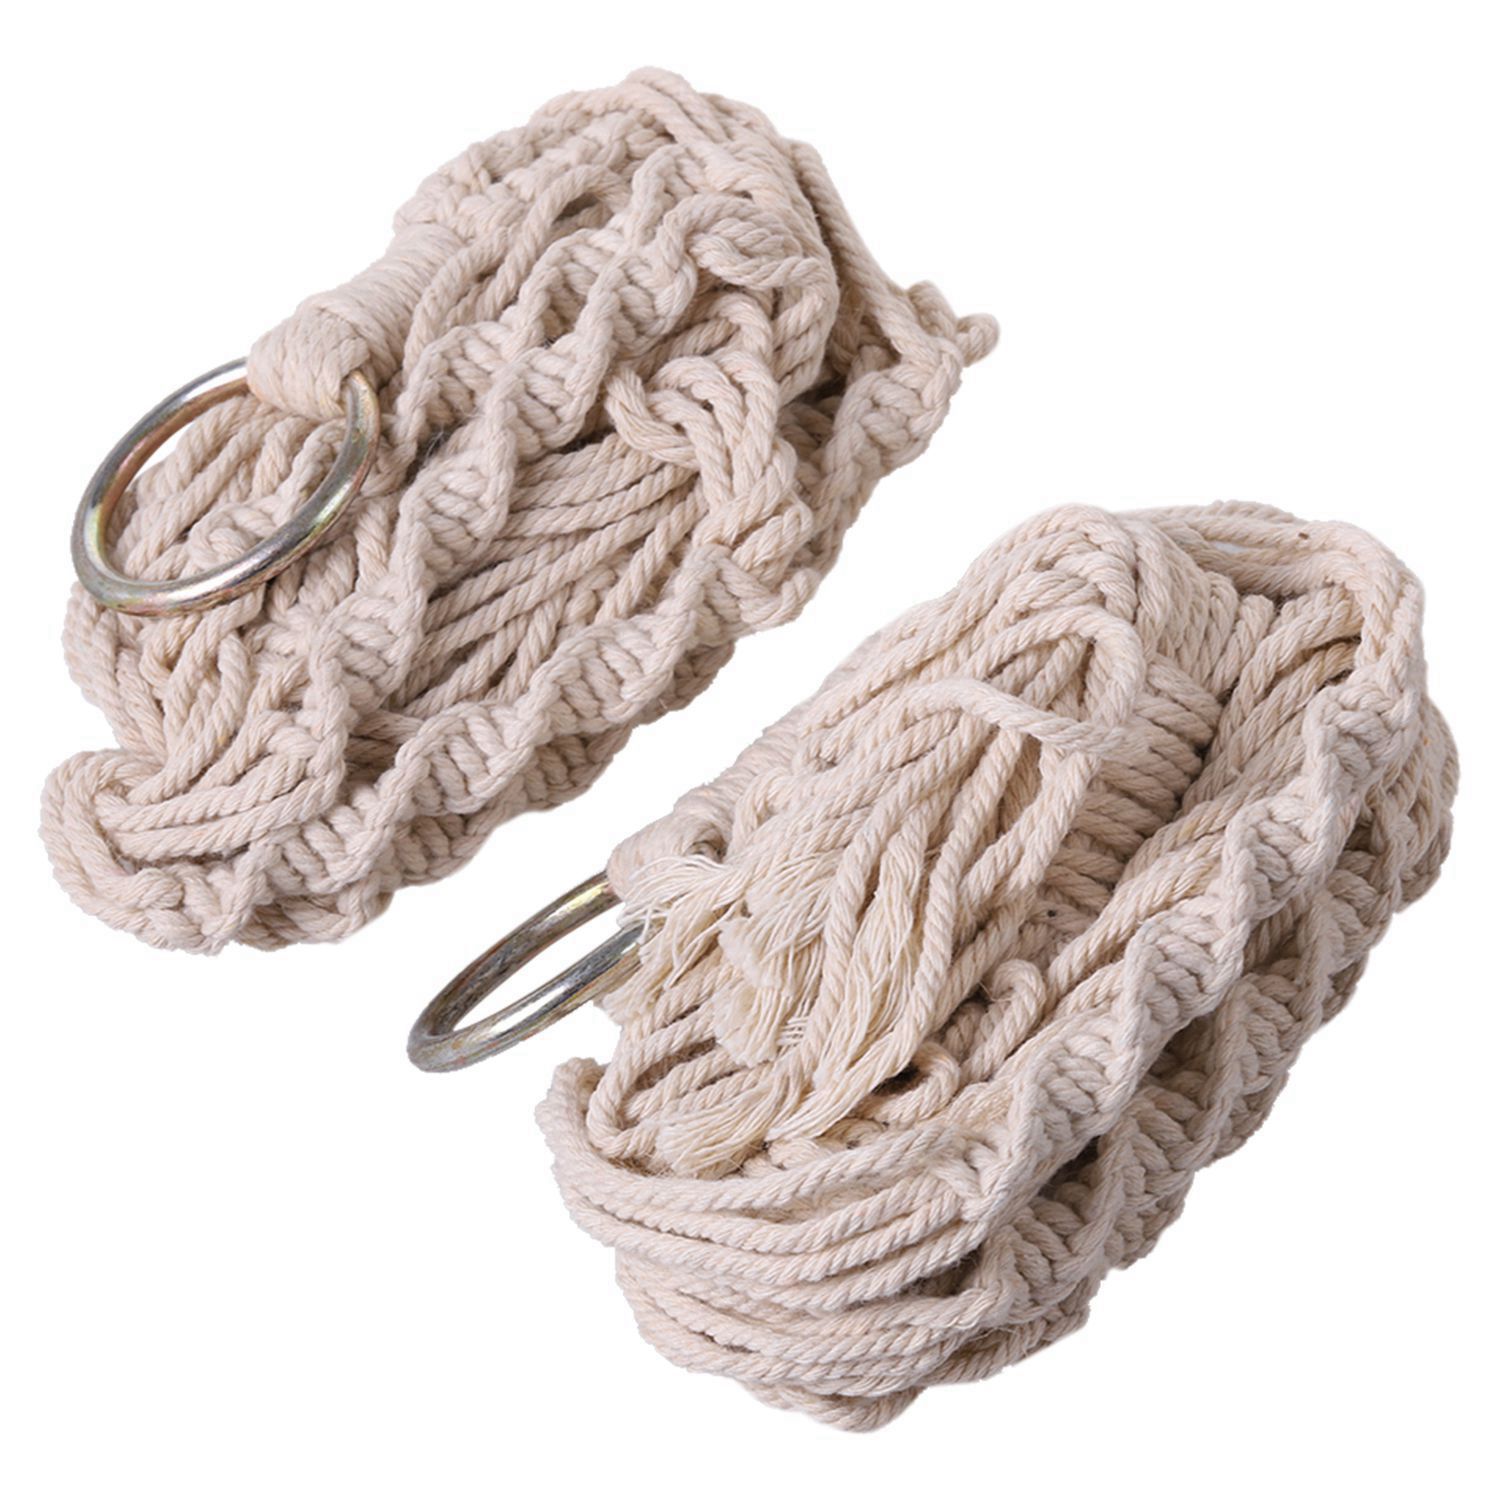 4-Legs-Hand-Knitting-Cotton-a-Flower-Pot-Holder-Hanging-Basket-Flower-Plant-Hanger-Rope-Hand-Knittin-1312480